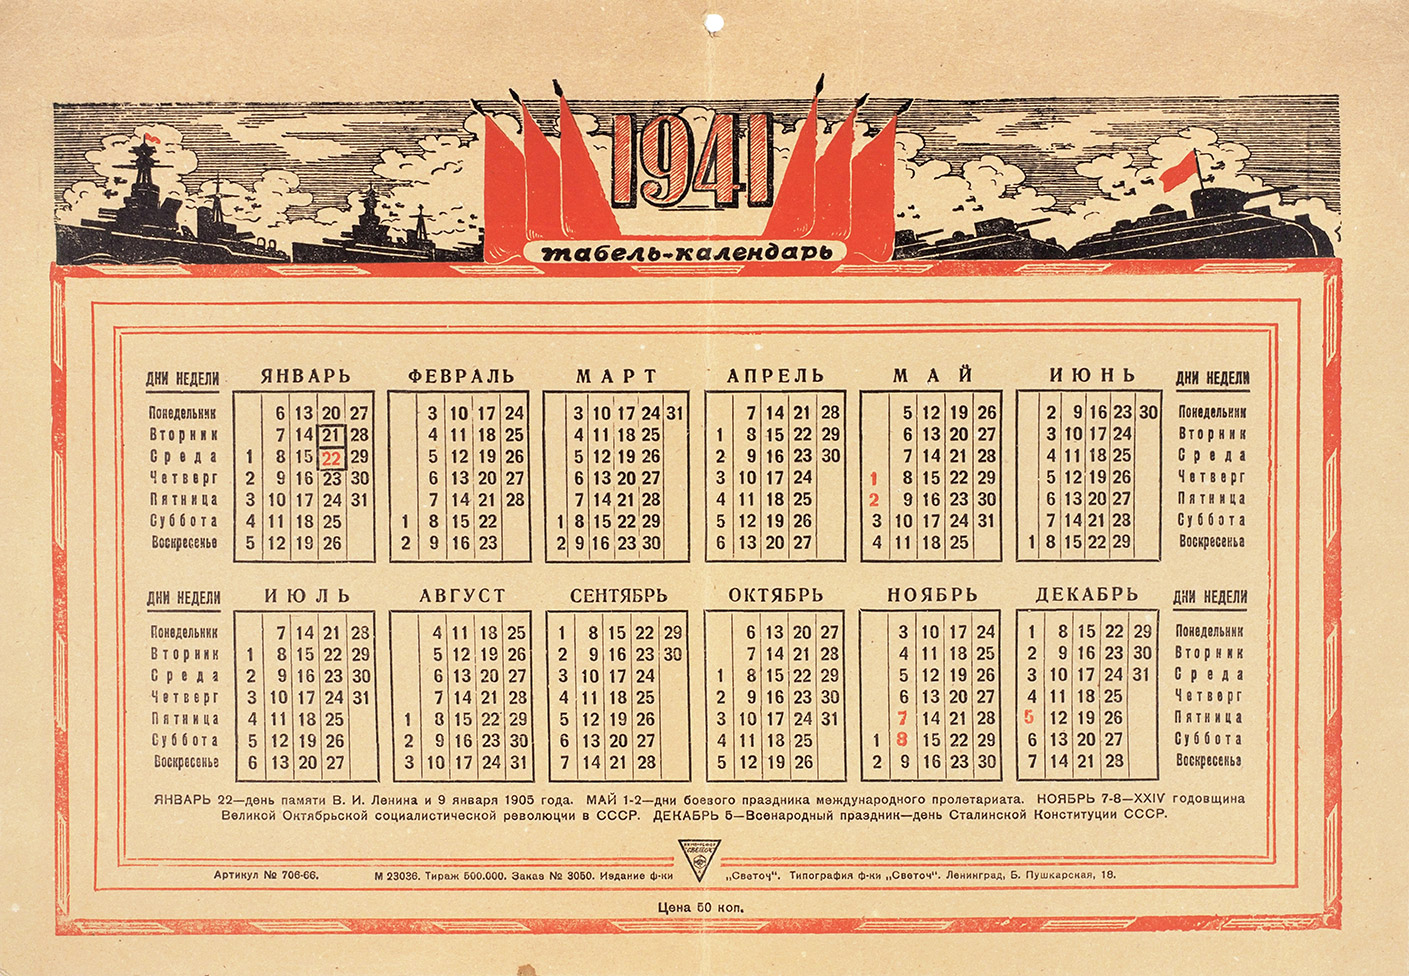 Табель-календарь на 1941 год. Л.: Тип. фабрики «Светоч», 1941. | Аукционы |  Аукционный дом «Литфонд»